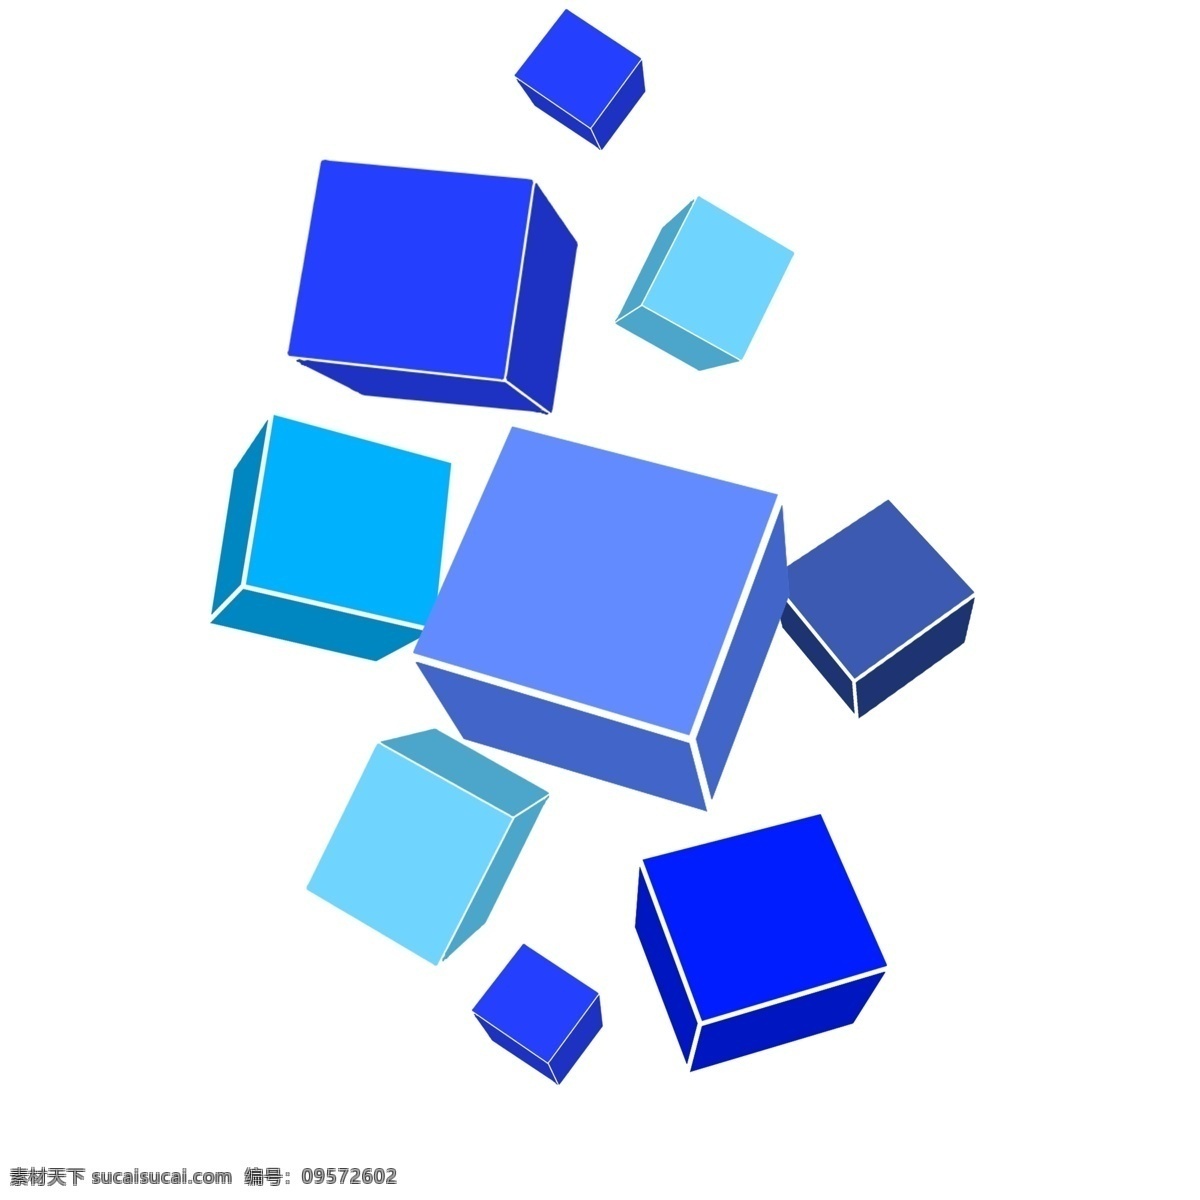 蓝色 正方体 立体几何 漂亮的正方体 蓝色的正方体 卡通插画 手绘立体几何 创意的形状